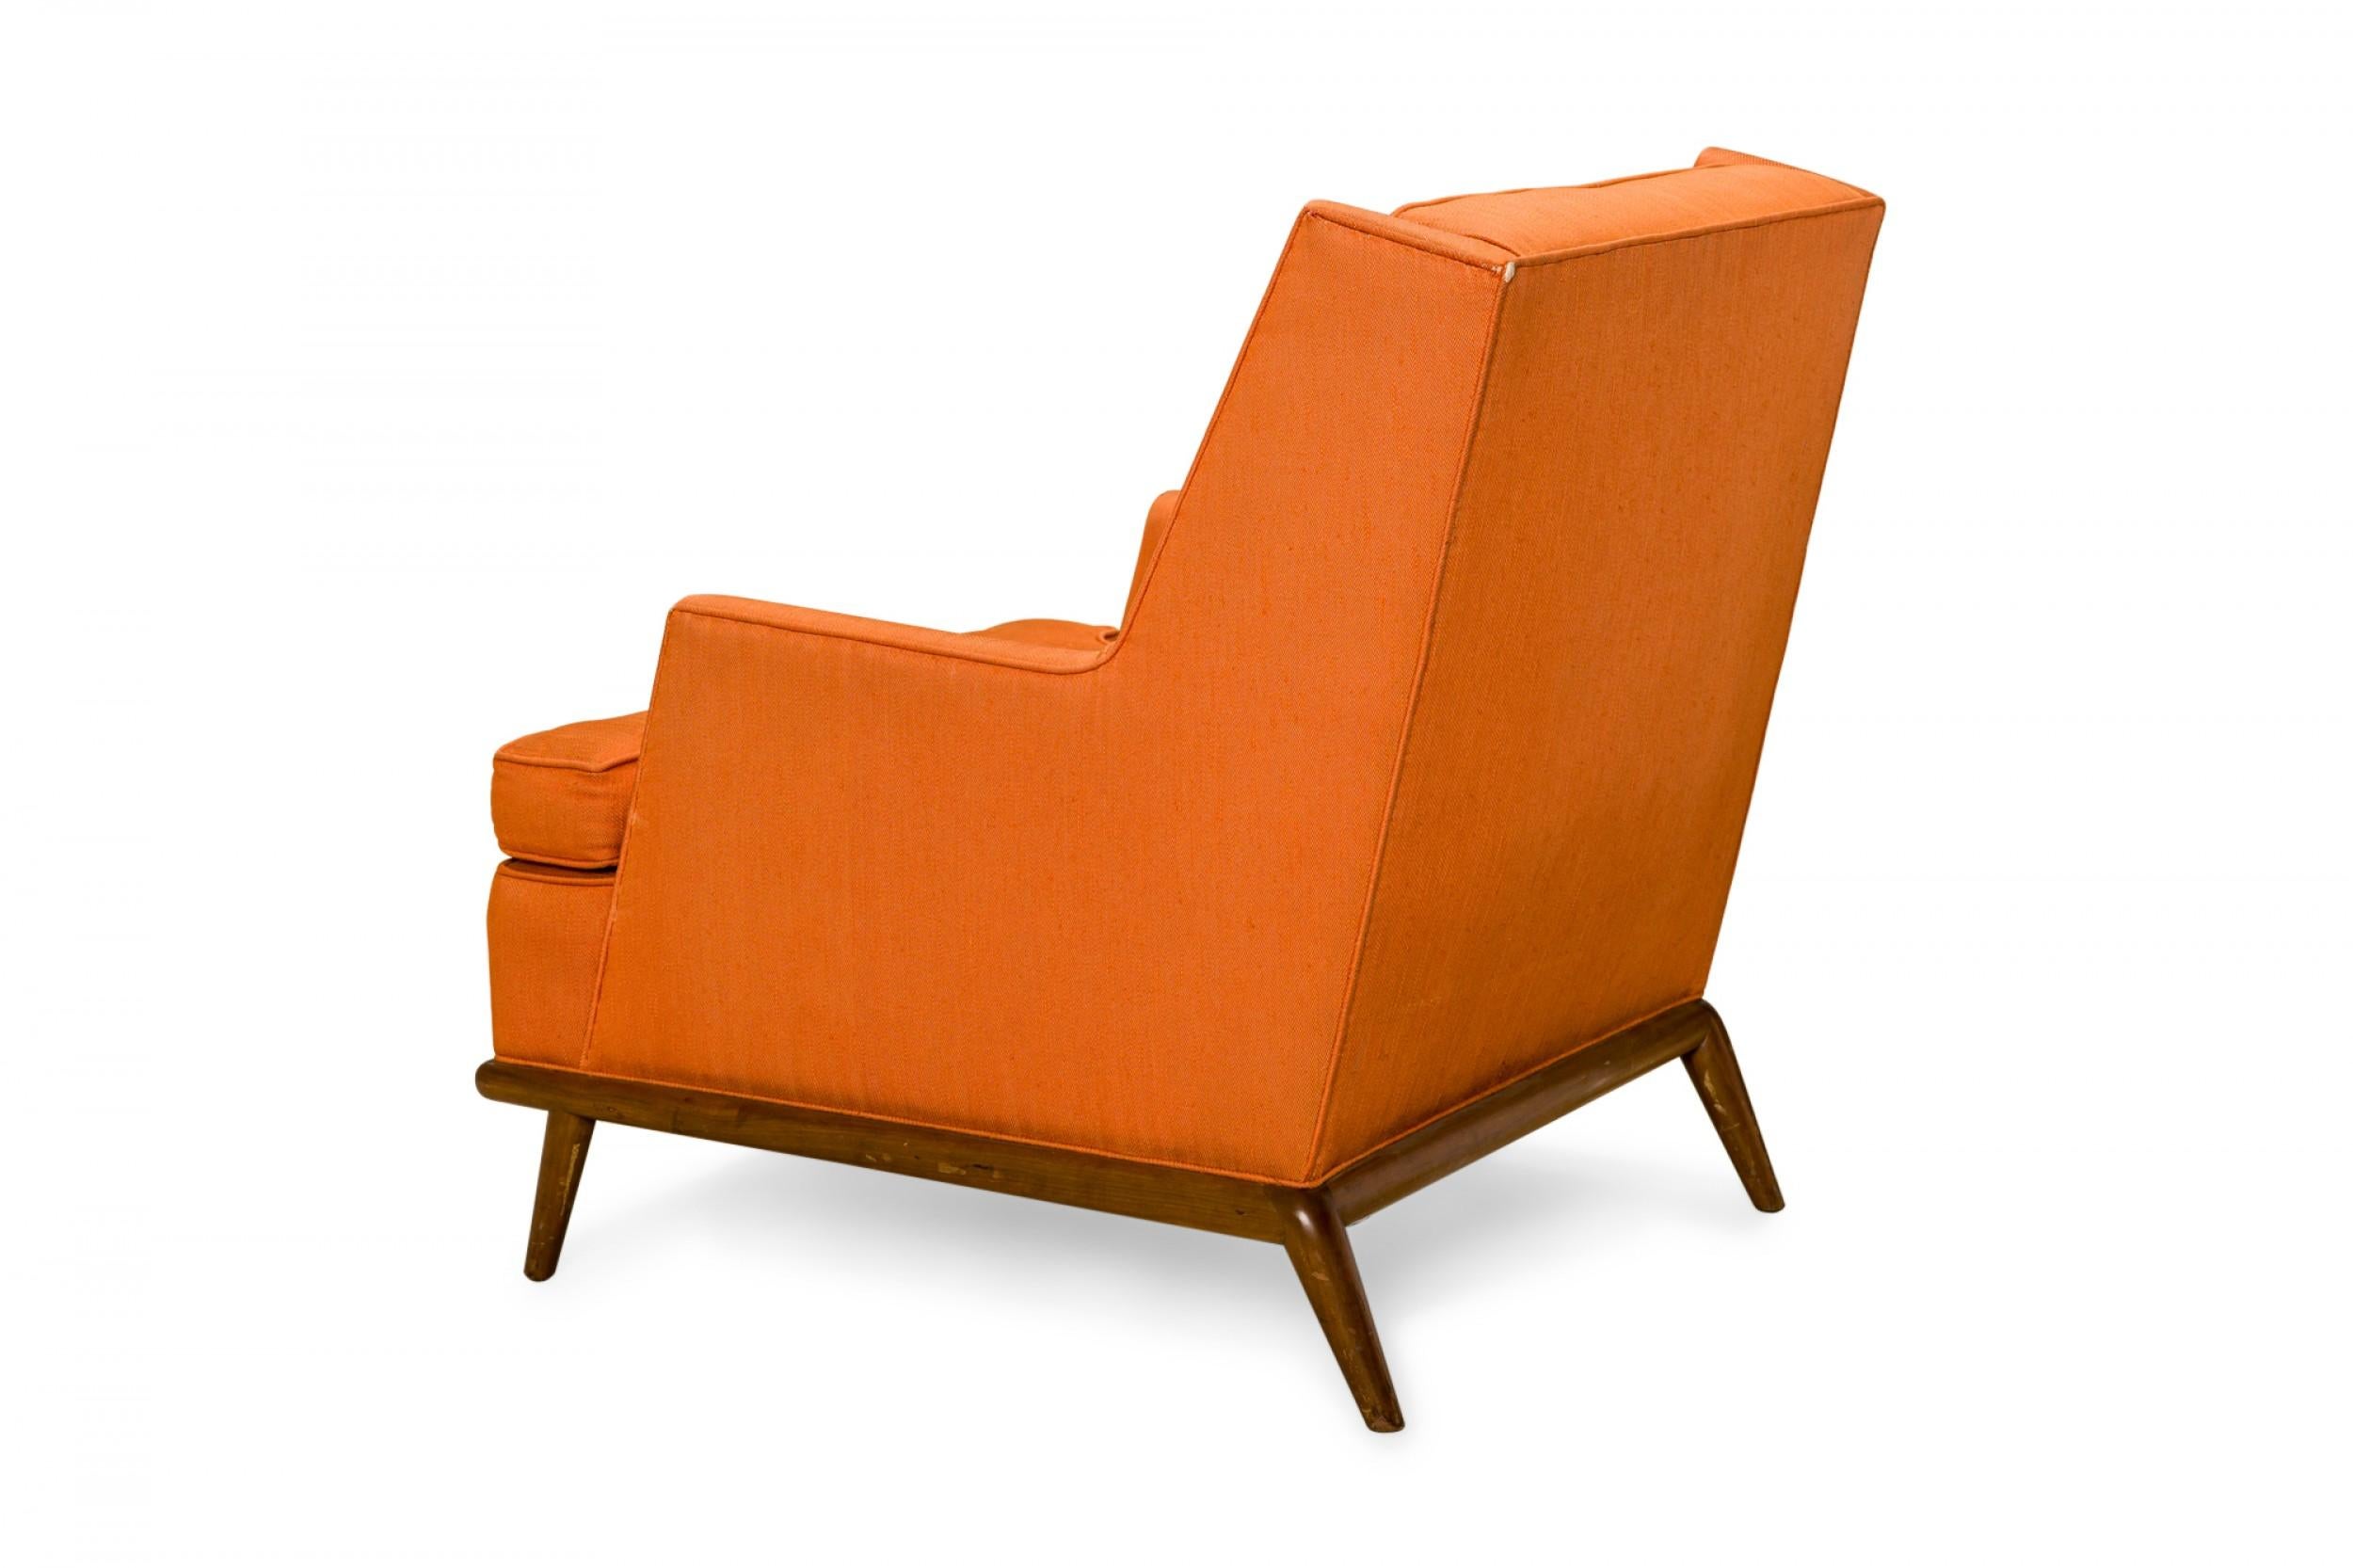 American T.H. Robsjohn-Gibbings for Widdicomb High Back Orange Upholstered Lounge Chair For Sale